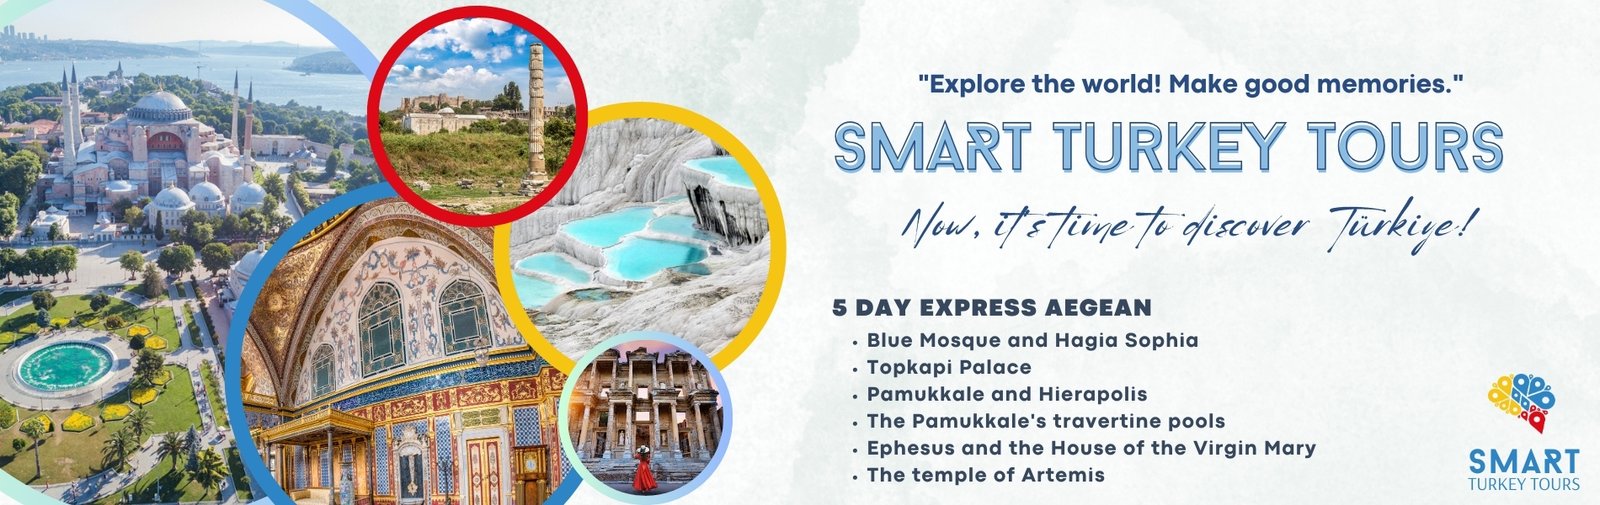 5 DAYS EXPRESS AEGEAN TOUR / Istanbul, Ephesus, Pamukkale